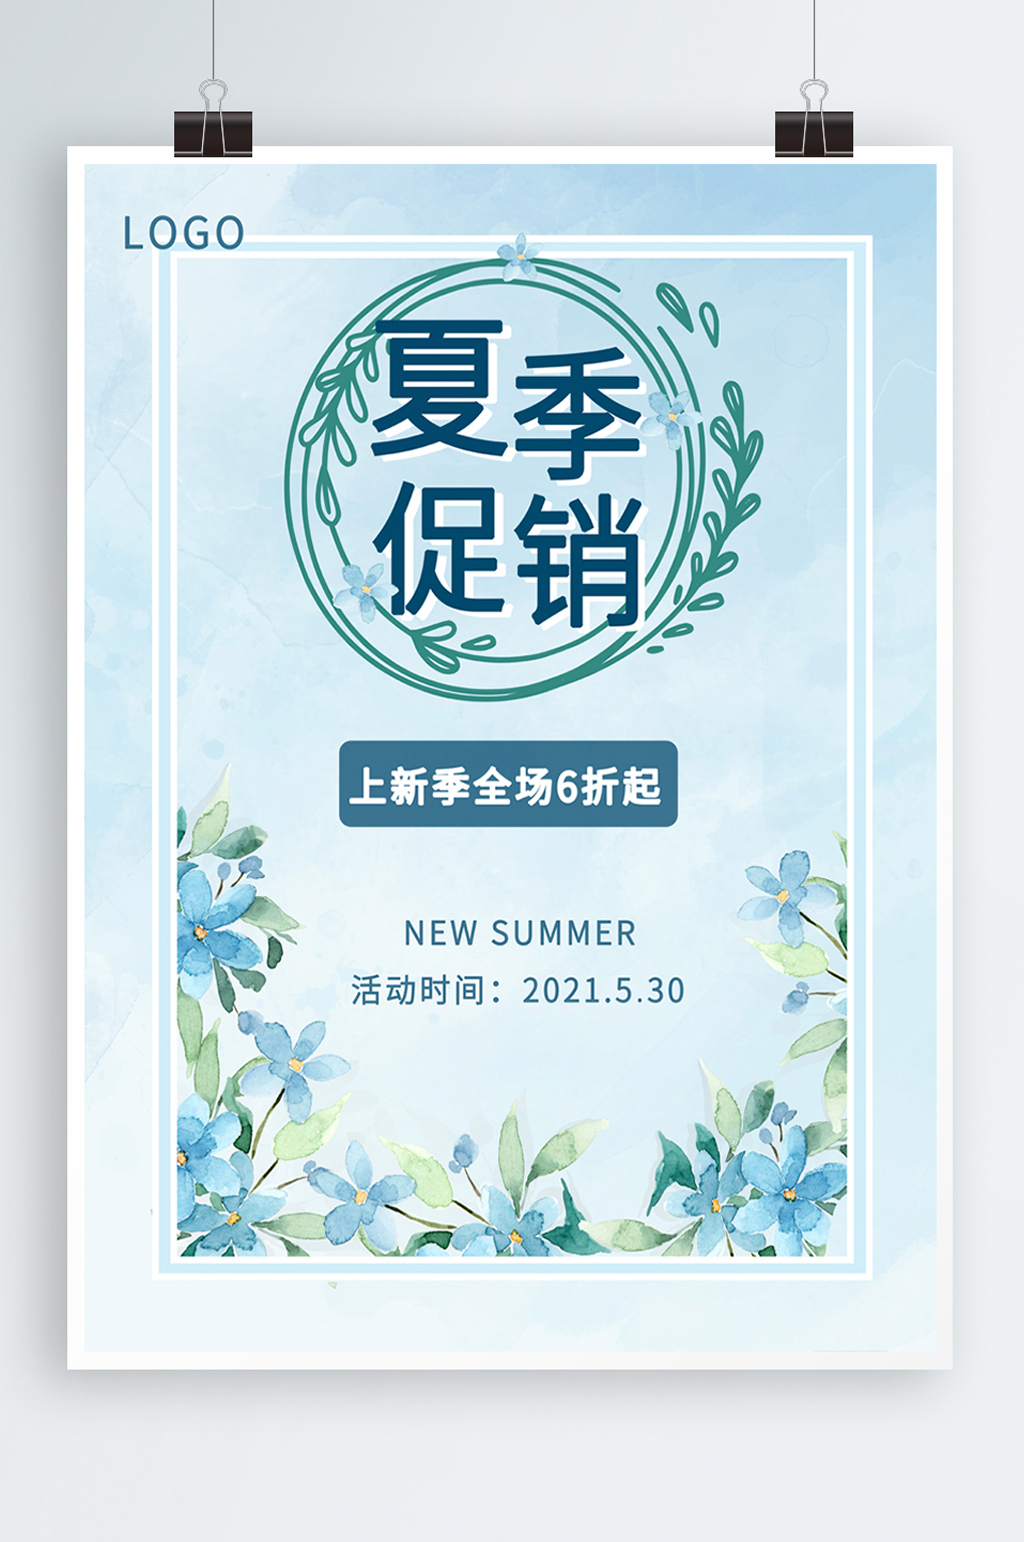 众图网独家提供蓝色清新服装夏季促销商场海报素材免费下载,本作品是